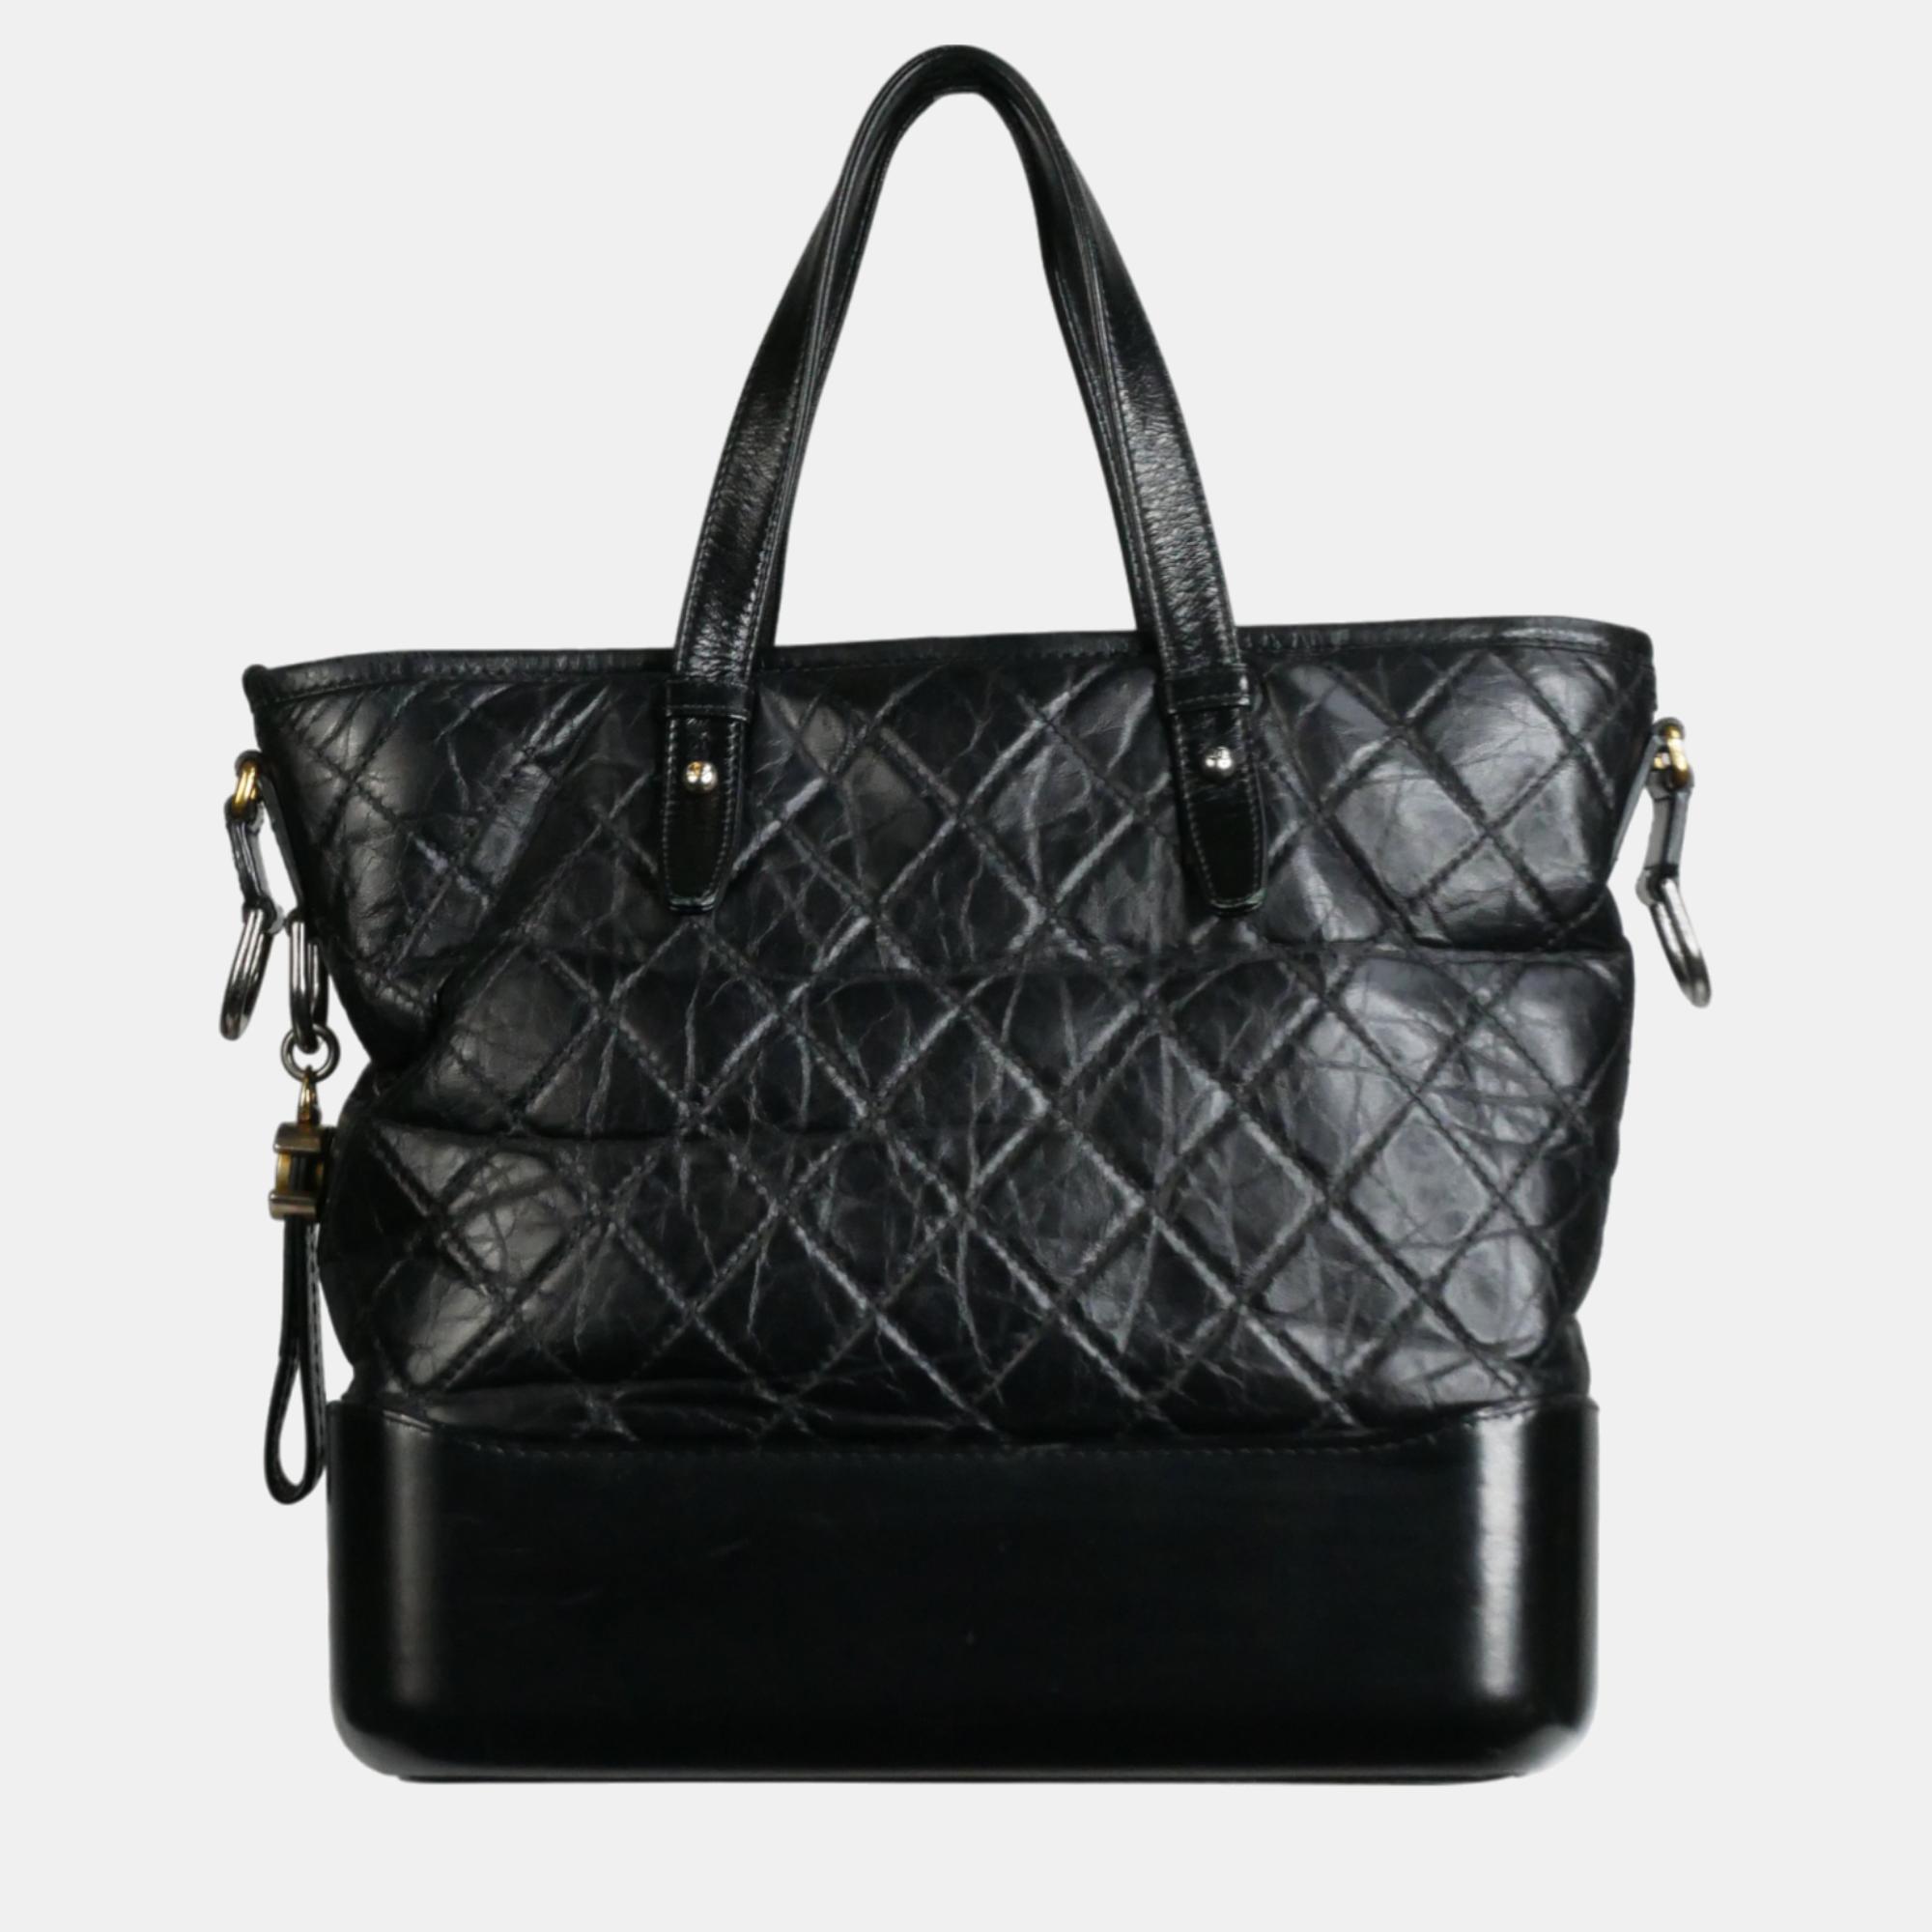 Chanel black leather gabrielle shoulder bag